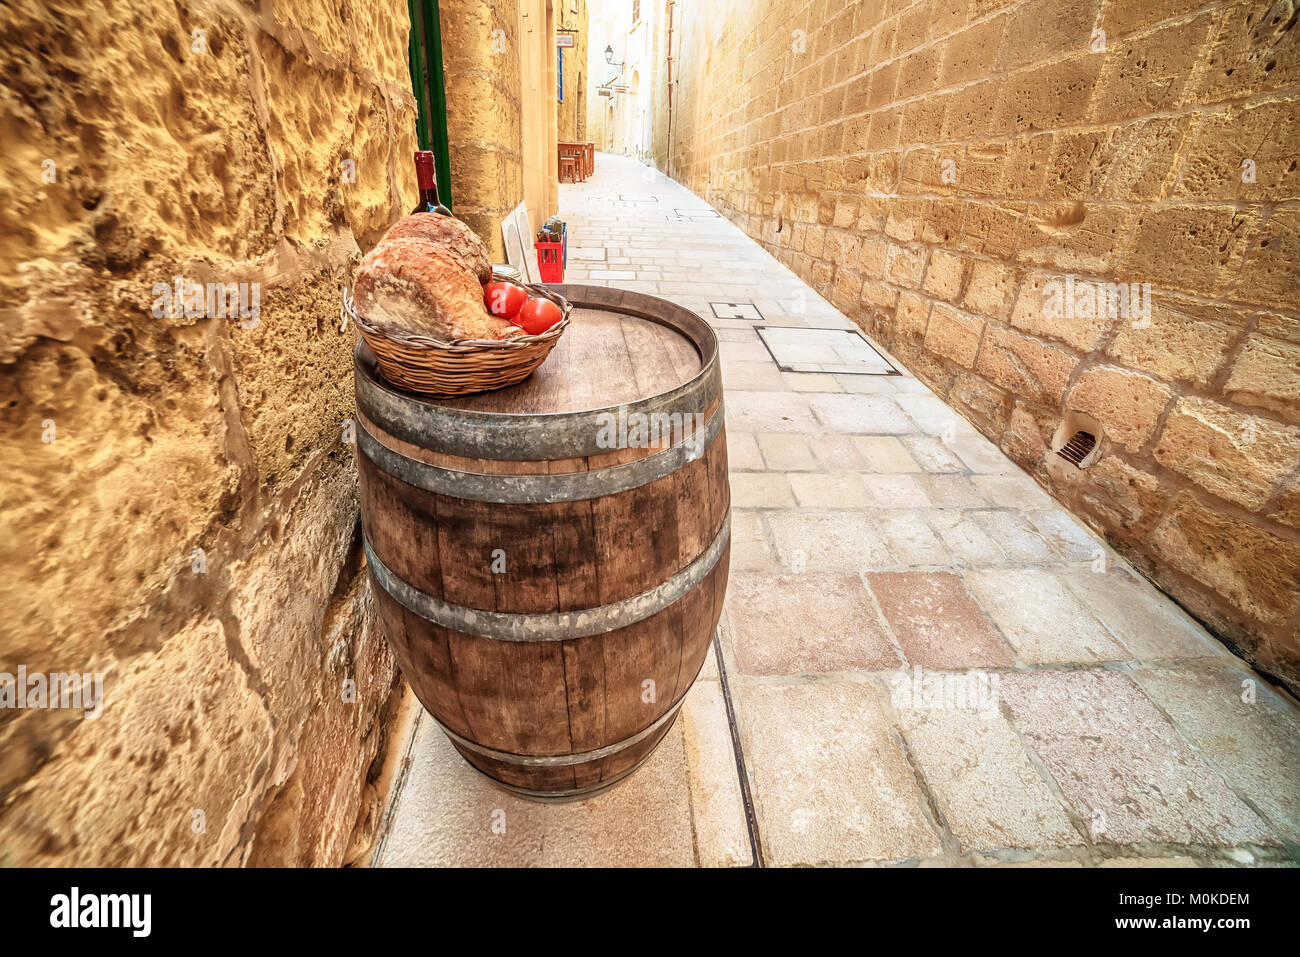 Victoria, Gozo island, Malta: medieval food in the Cittadella Stock Photo